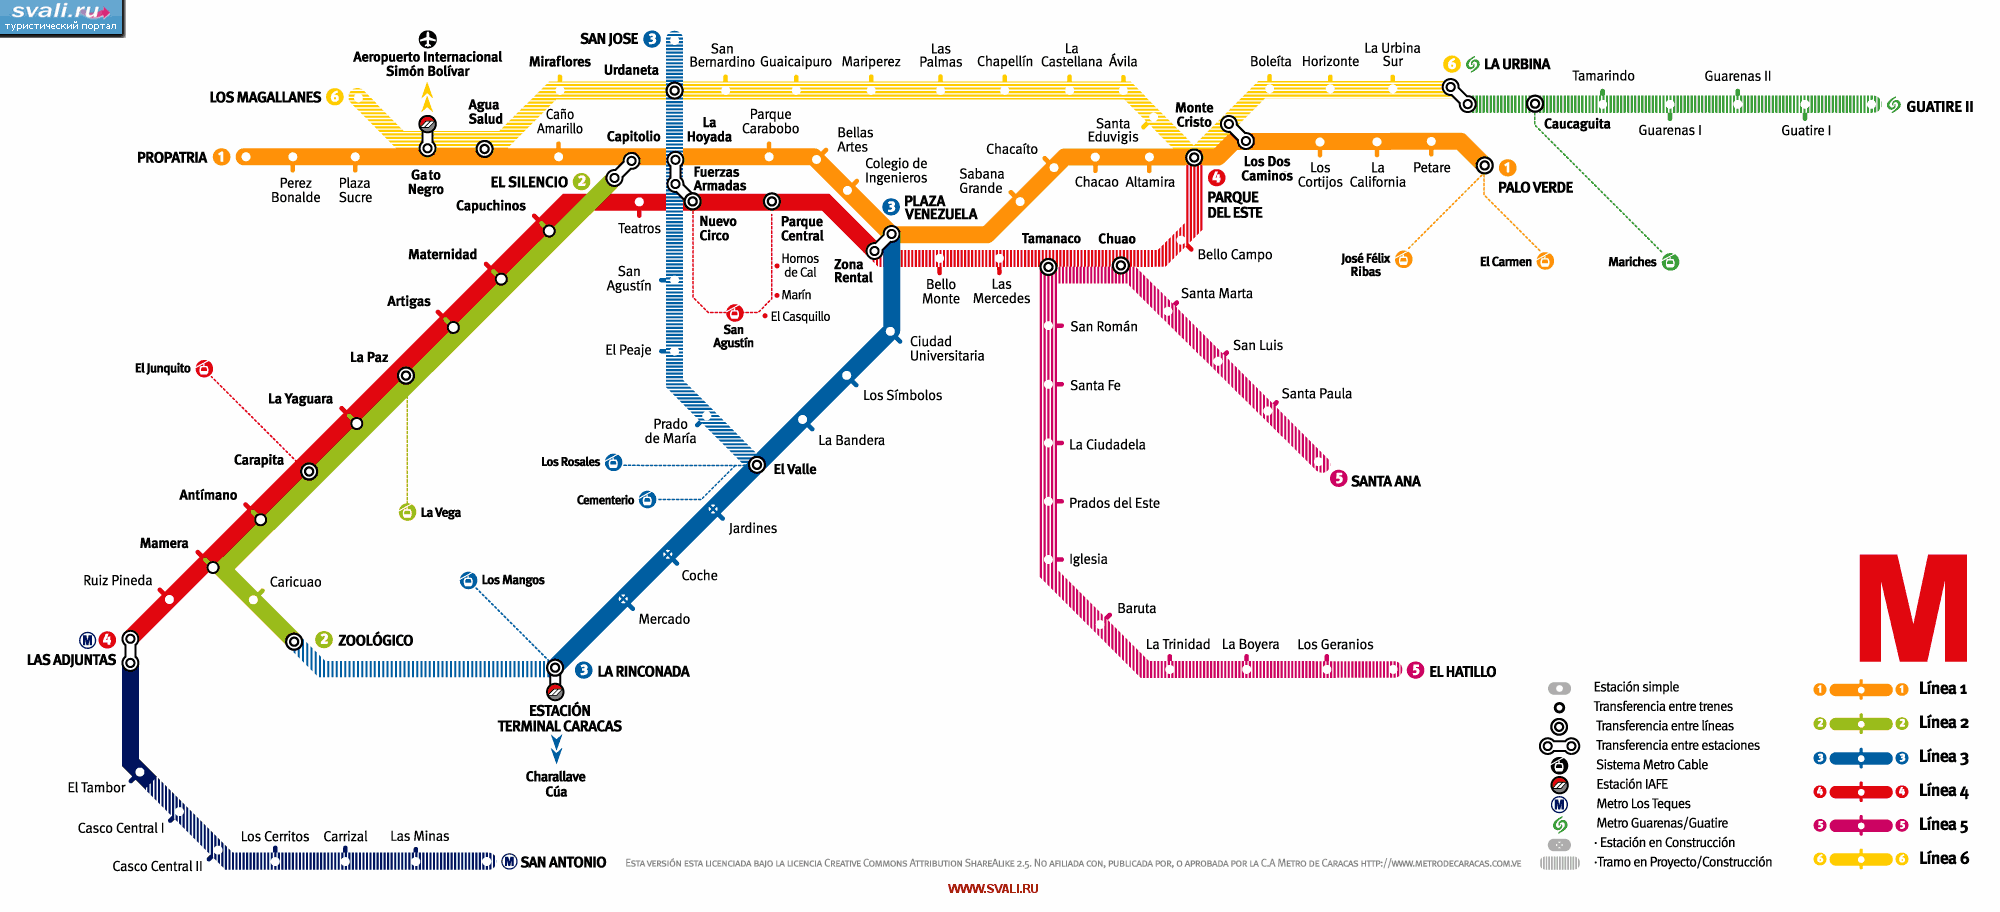 Схема метро Каракаса, Венесуэла (исп.)